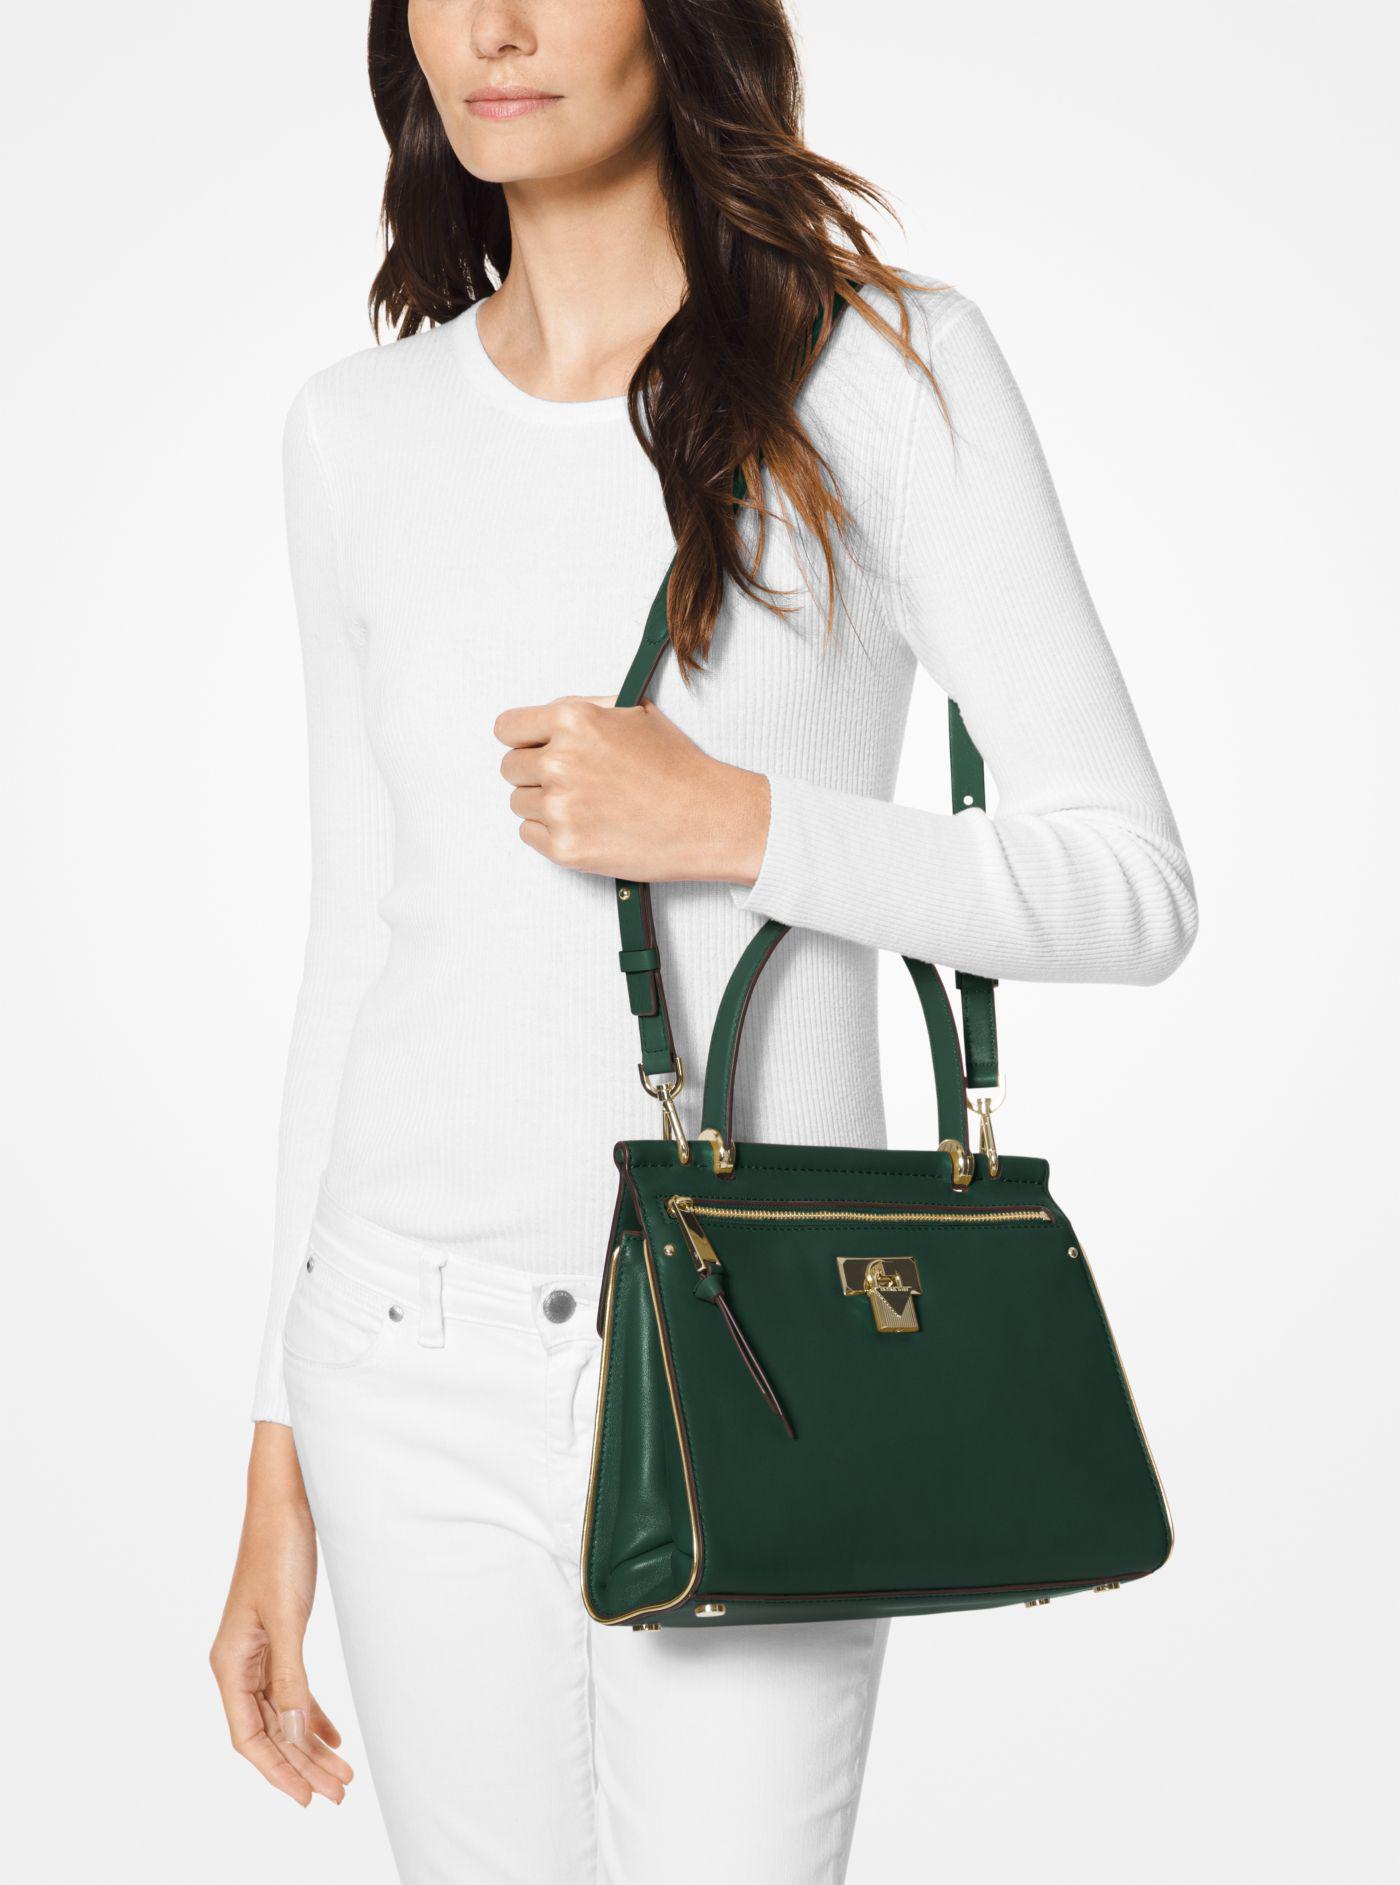 jasmine medium leather satchel